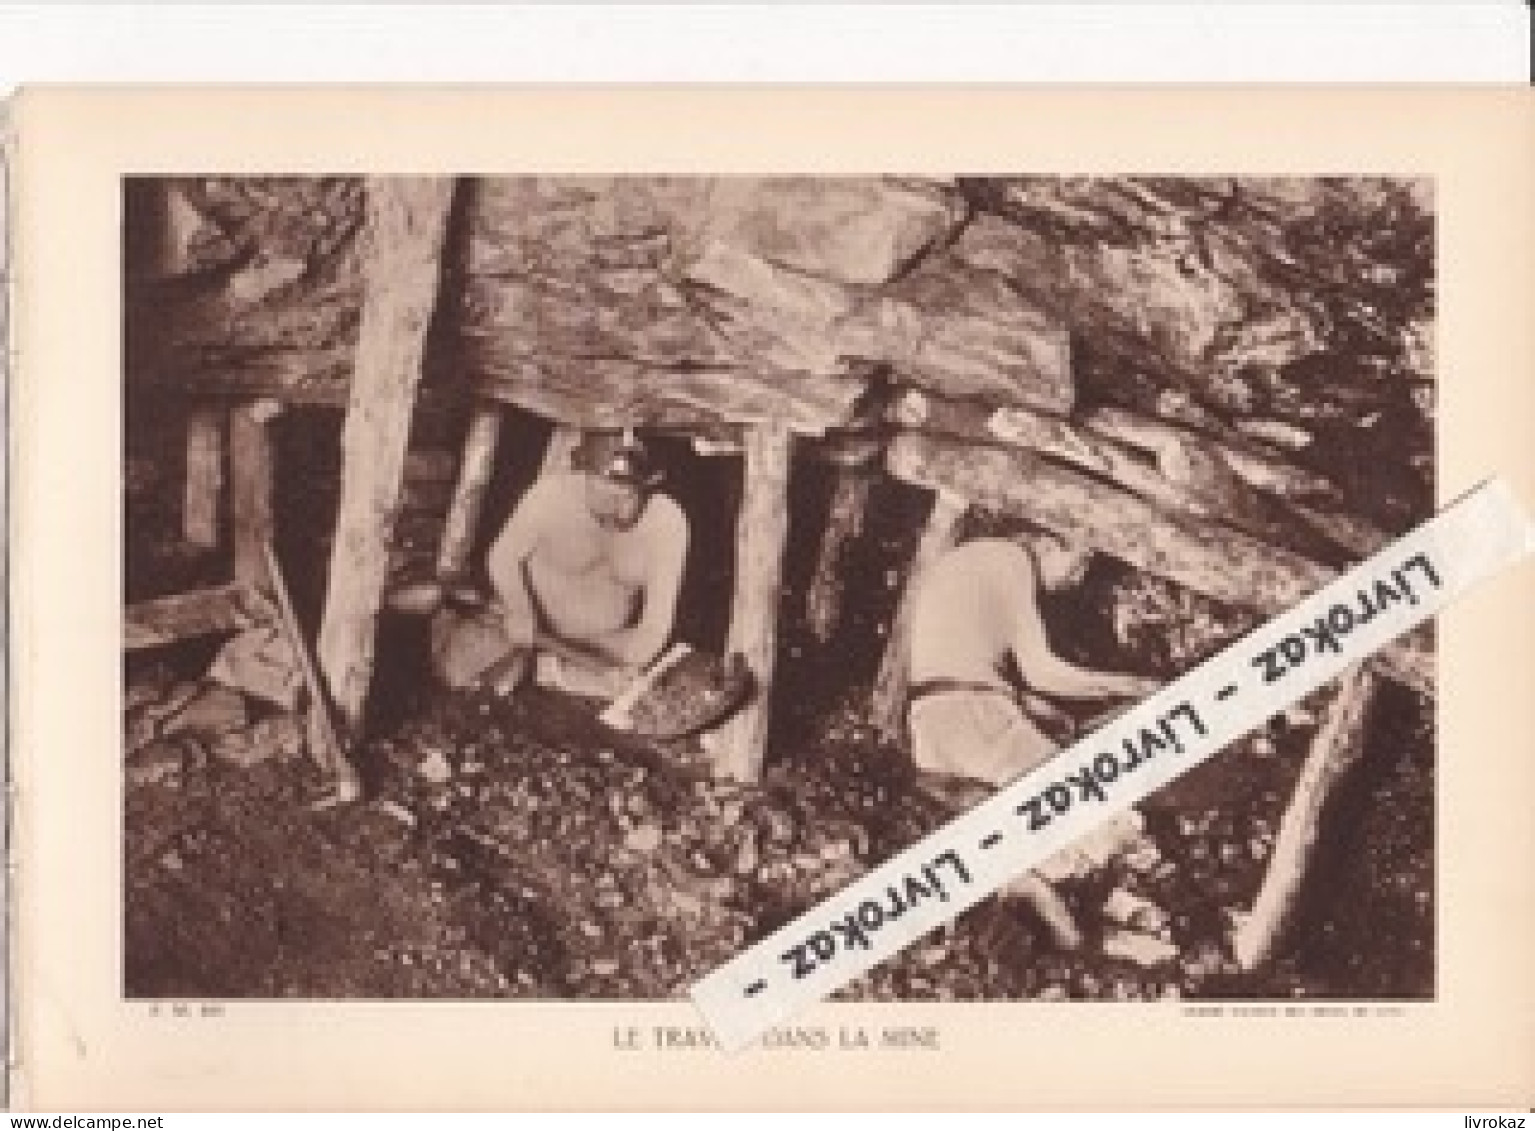 Travail D'abattage Dans Une Mine De Charbon Près De Lens (Pas-de-Calais) - Photo Sépia Extraite D'un Livre Paru En 1933 - Unclassified